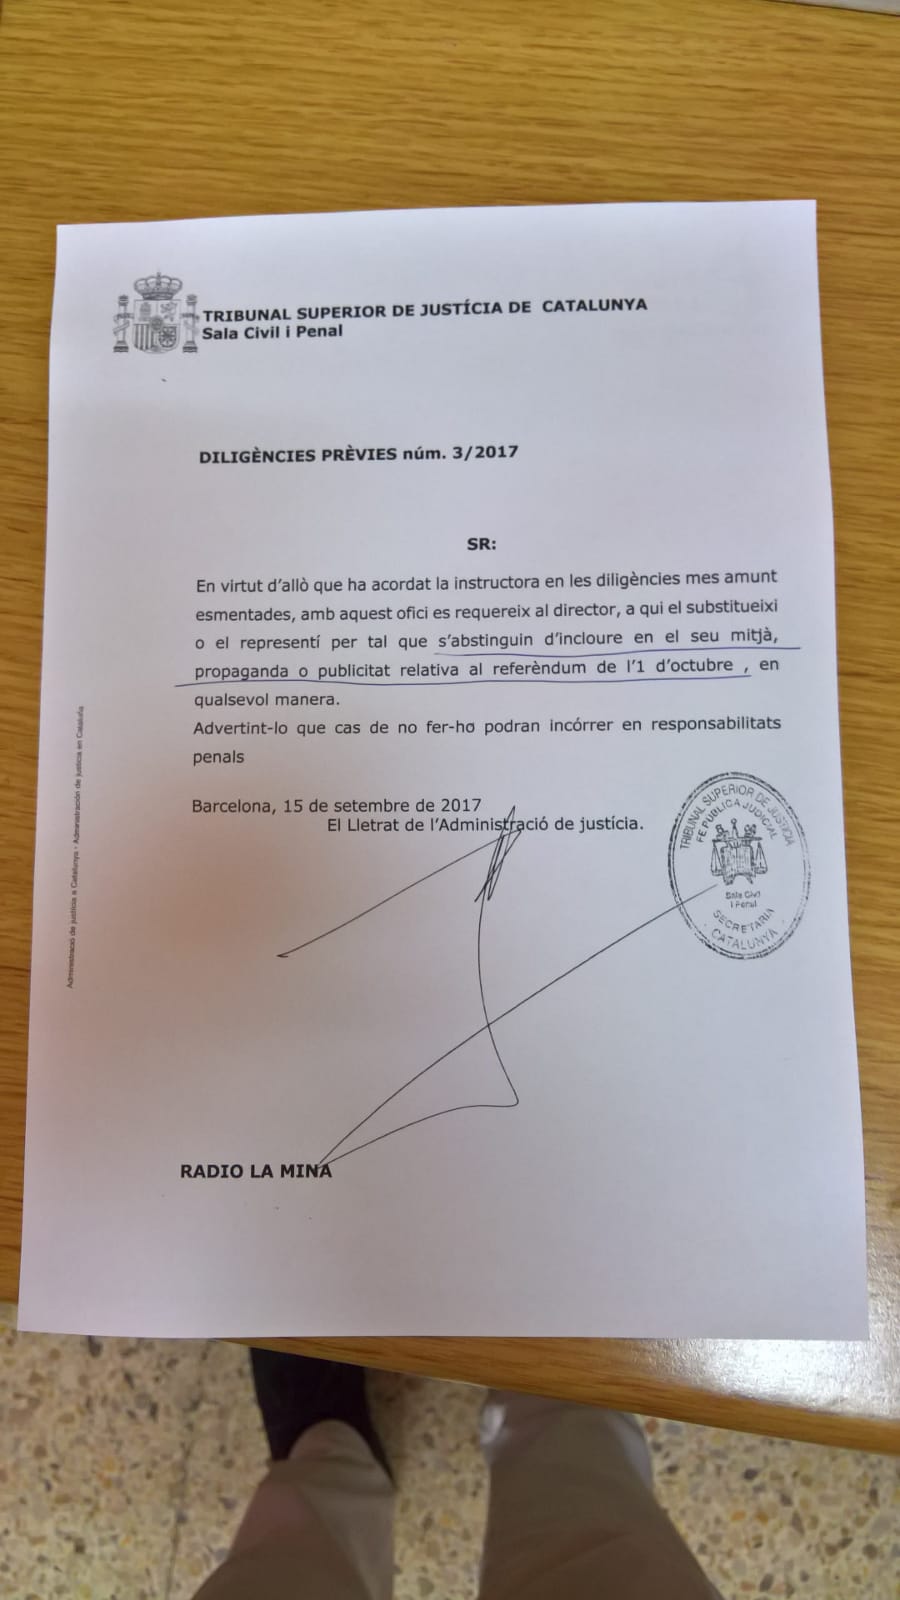 La Guardia Civil se presenta en Ràdio La Mina con la notificación sobre el 1-O